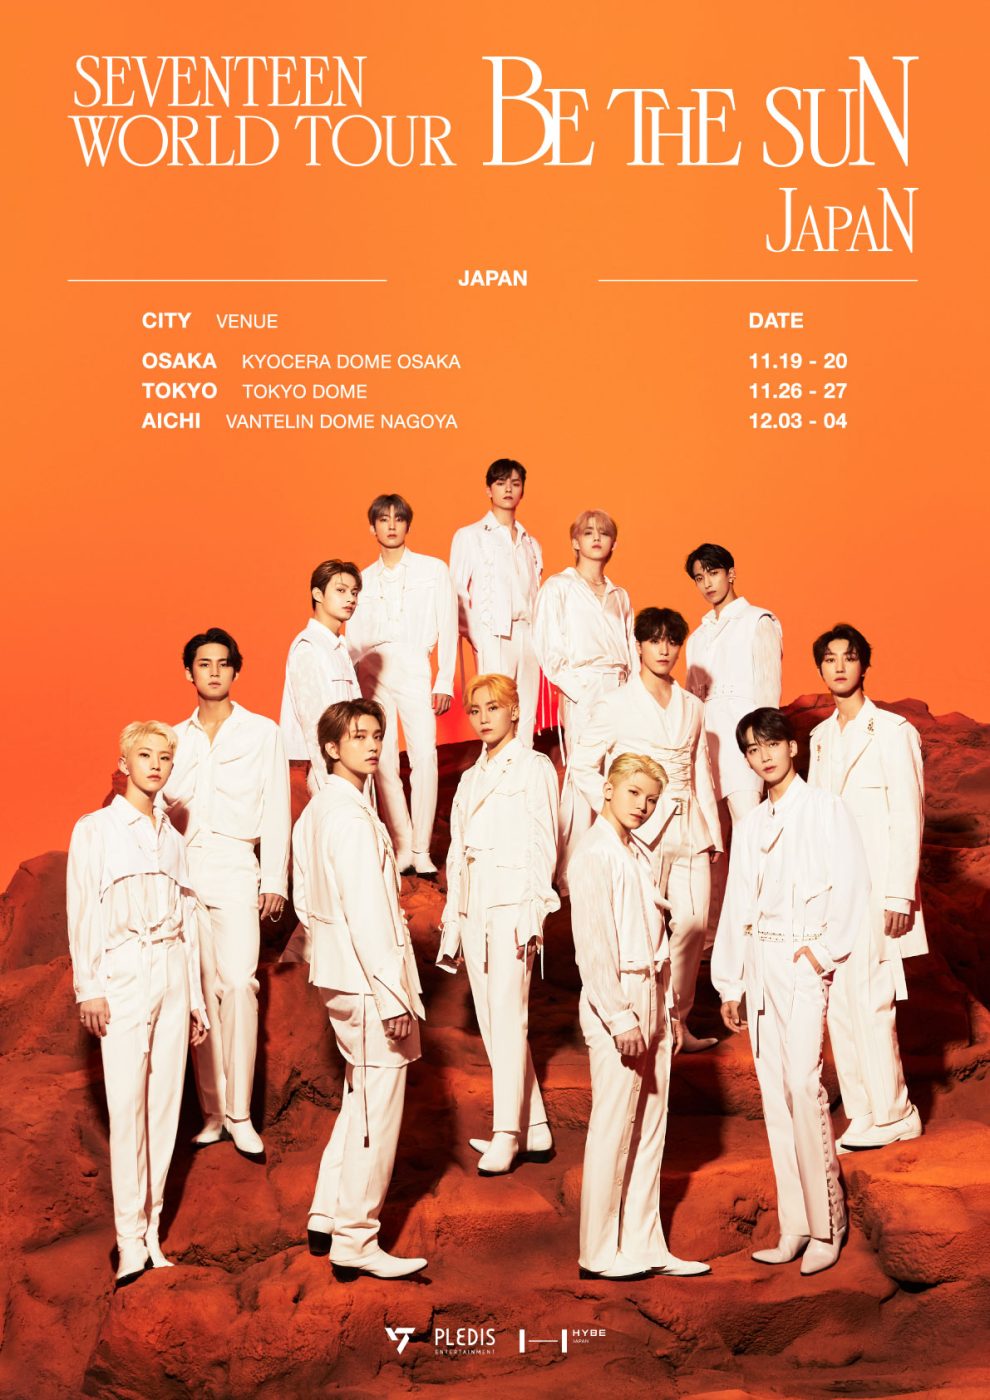 WORLD TOUR [BE THE SUN] - JAPAN